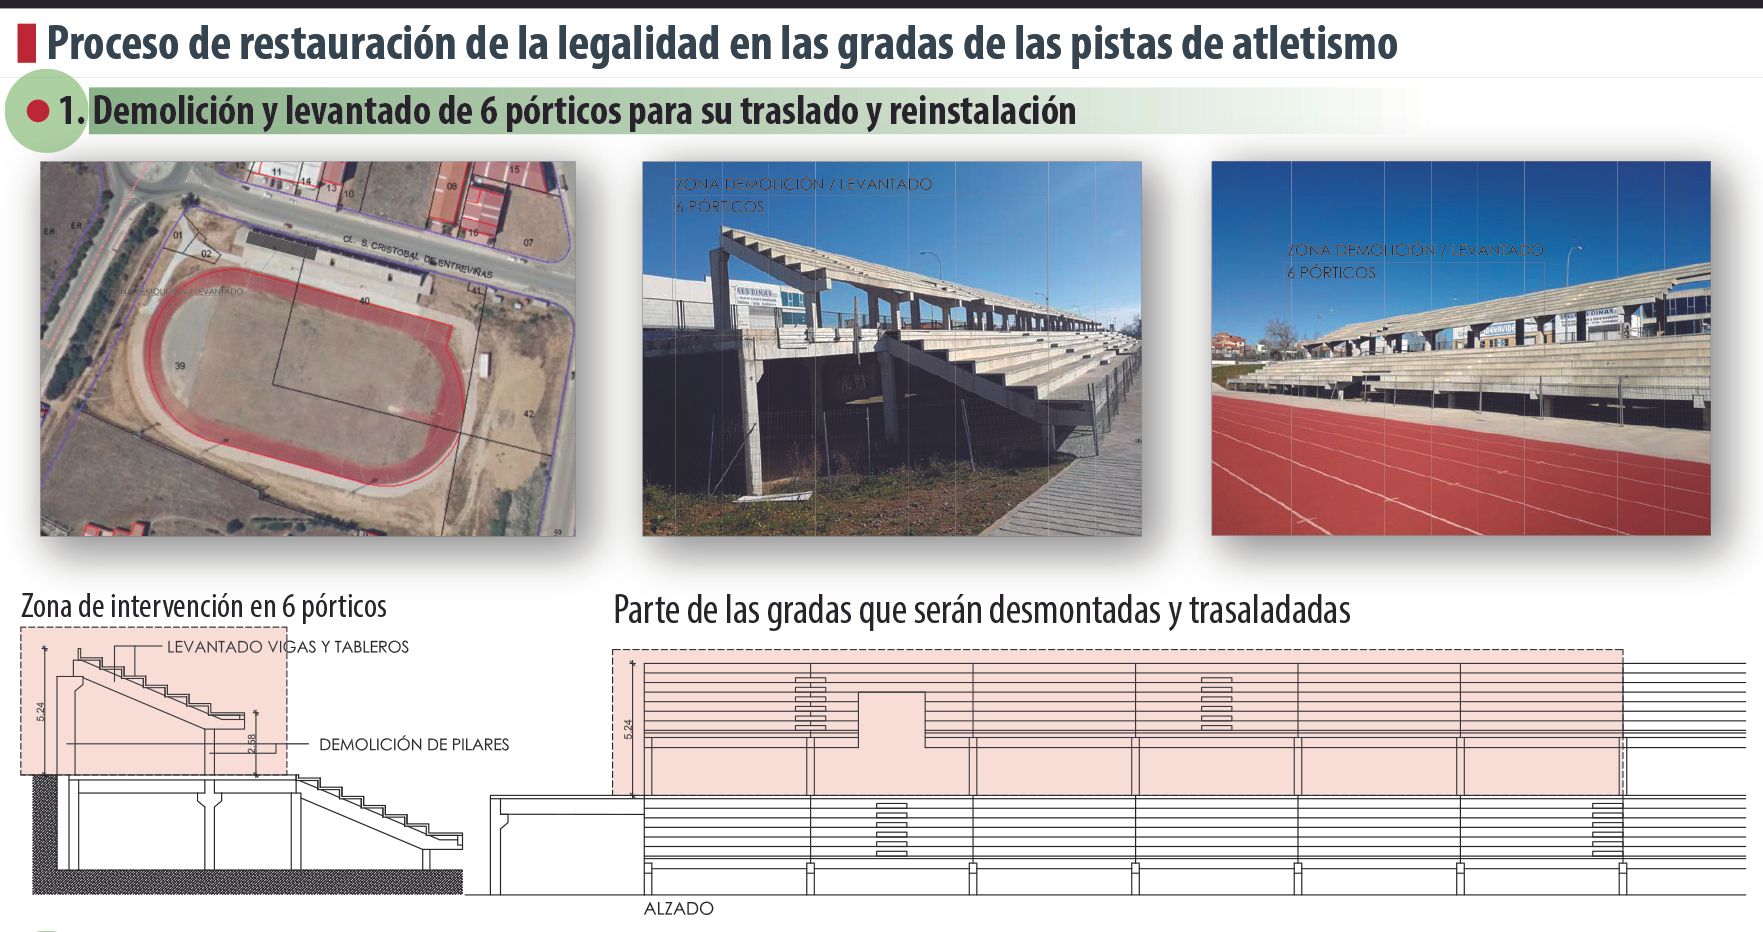 Infografía sobre la restauración de la legalidad de las gradas de las pistas de atletismo.